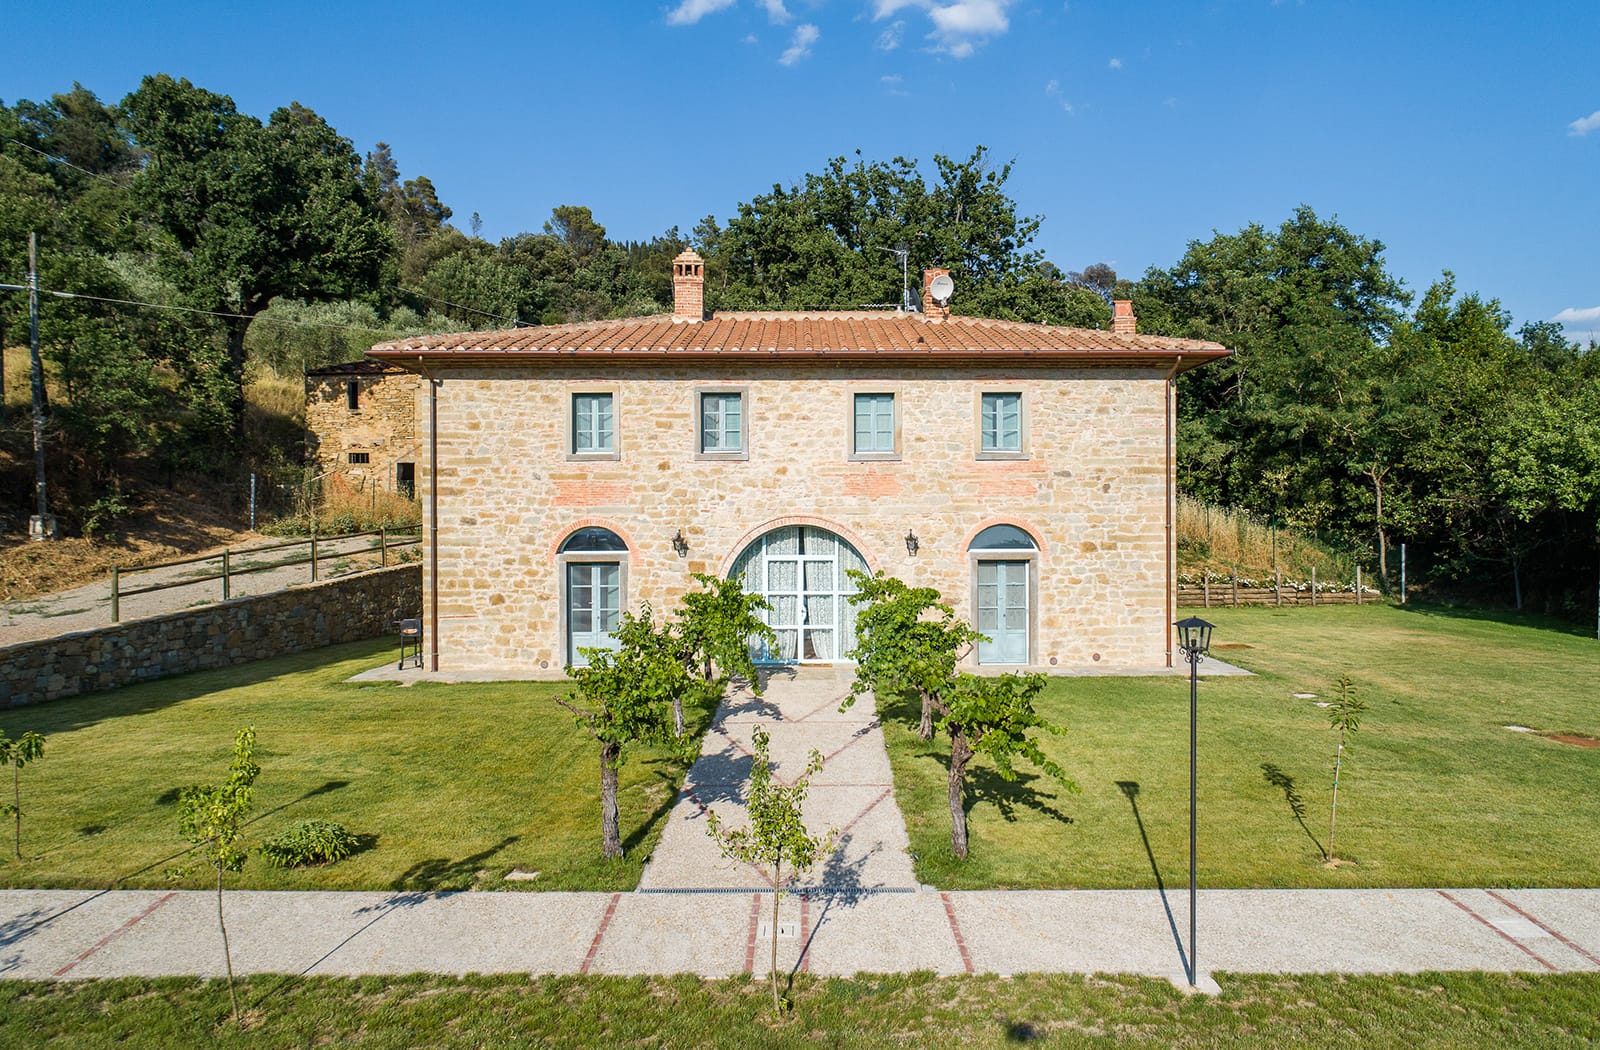 Villa Cortona – Vacanze a Cortona- Villa Mezzavia